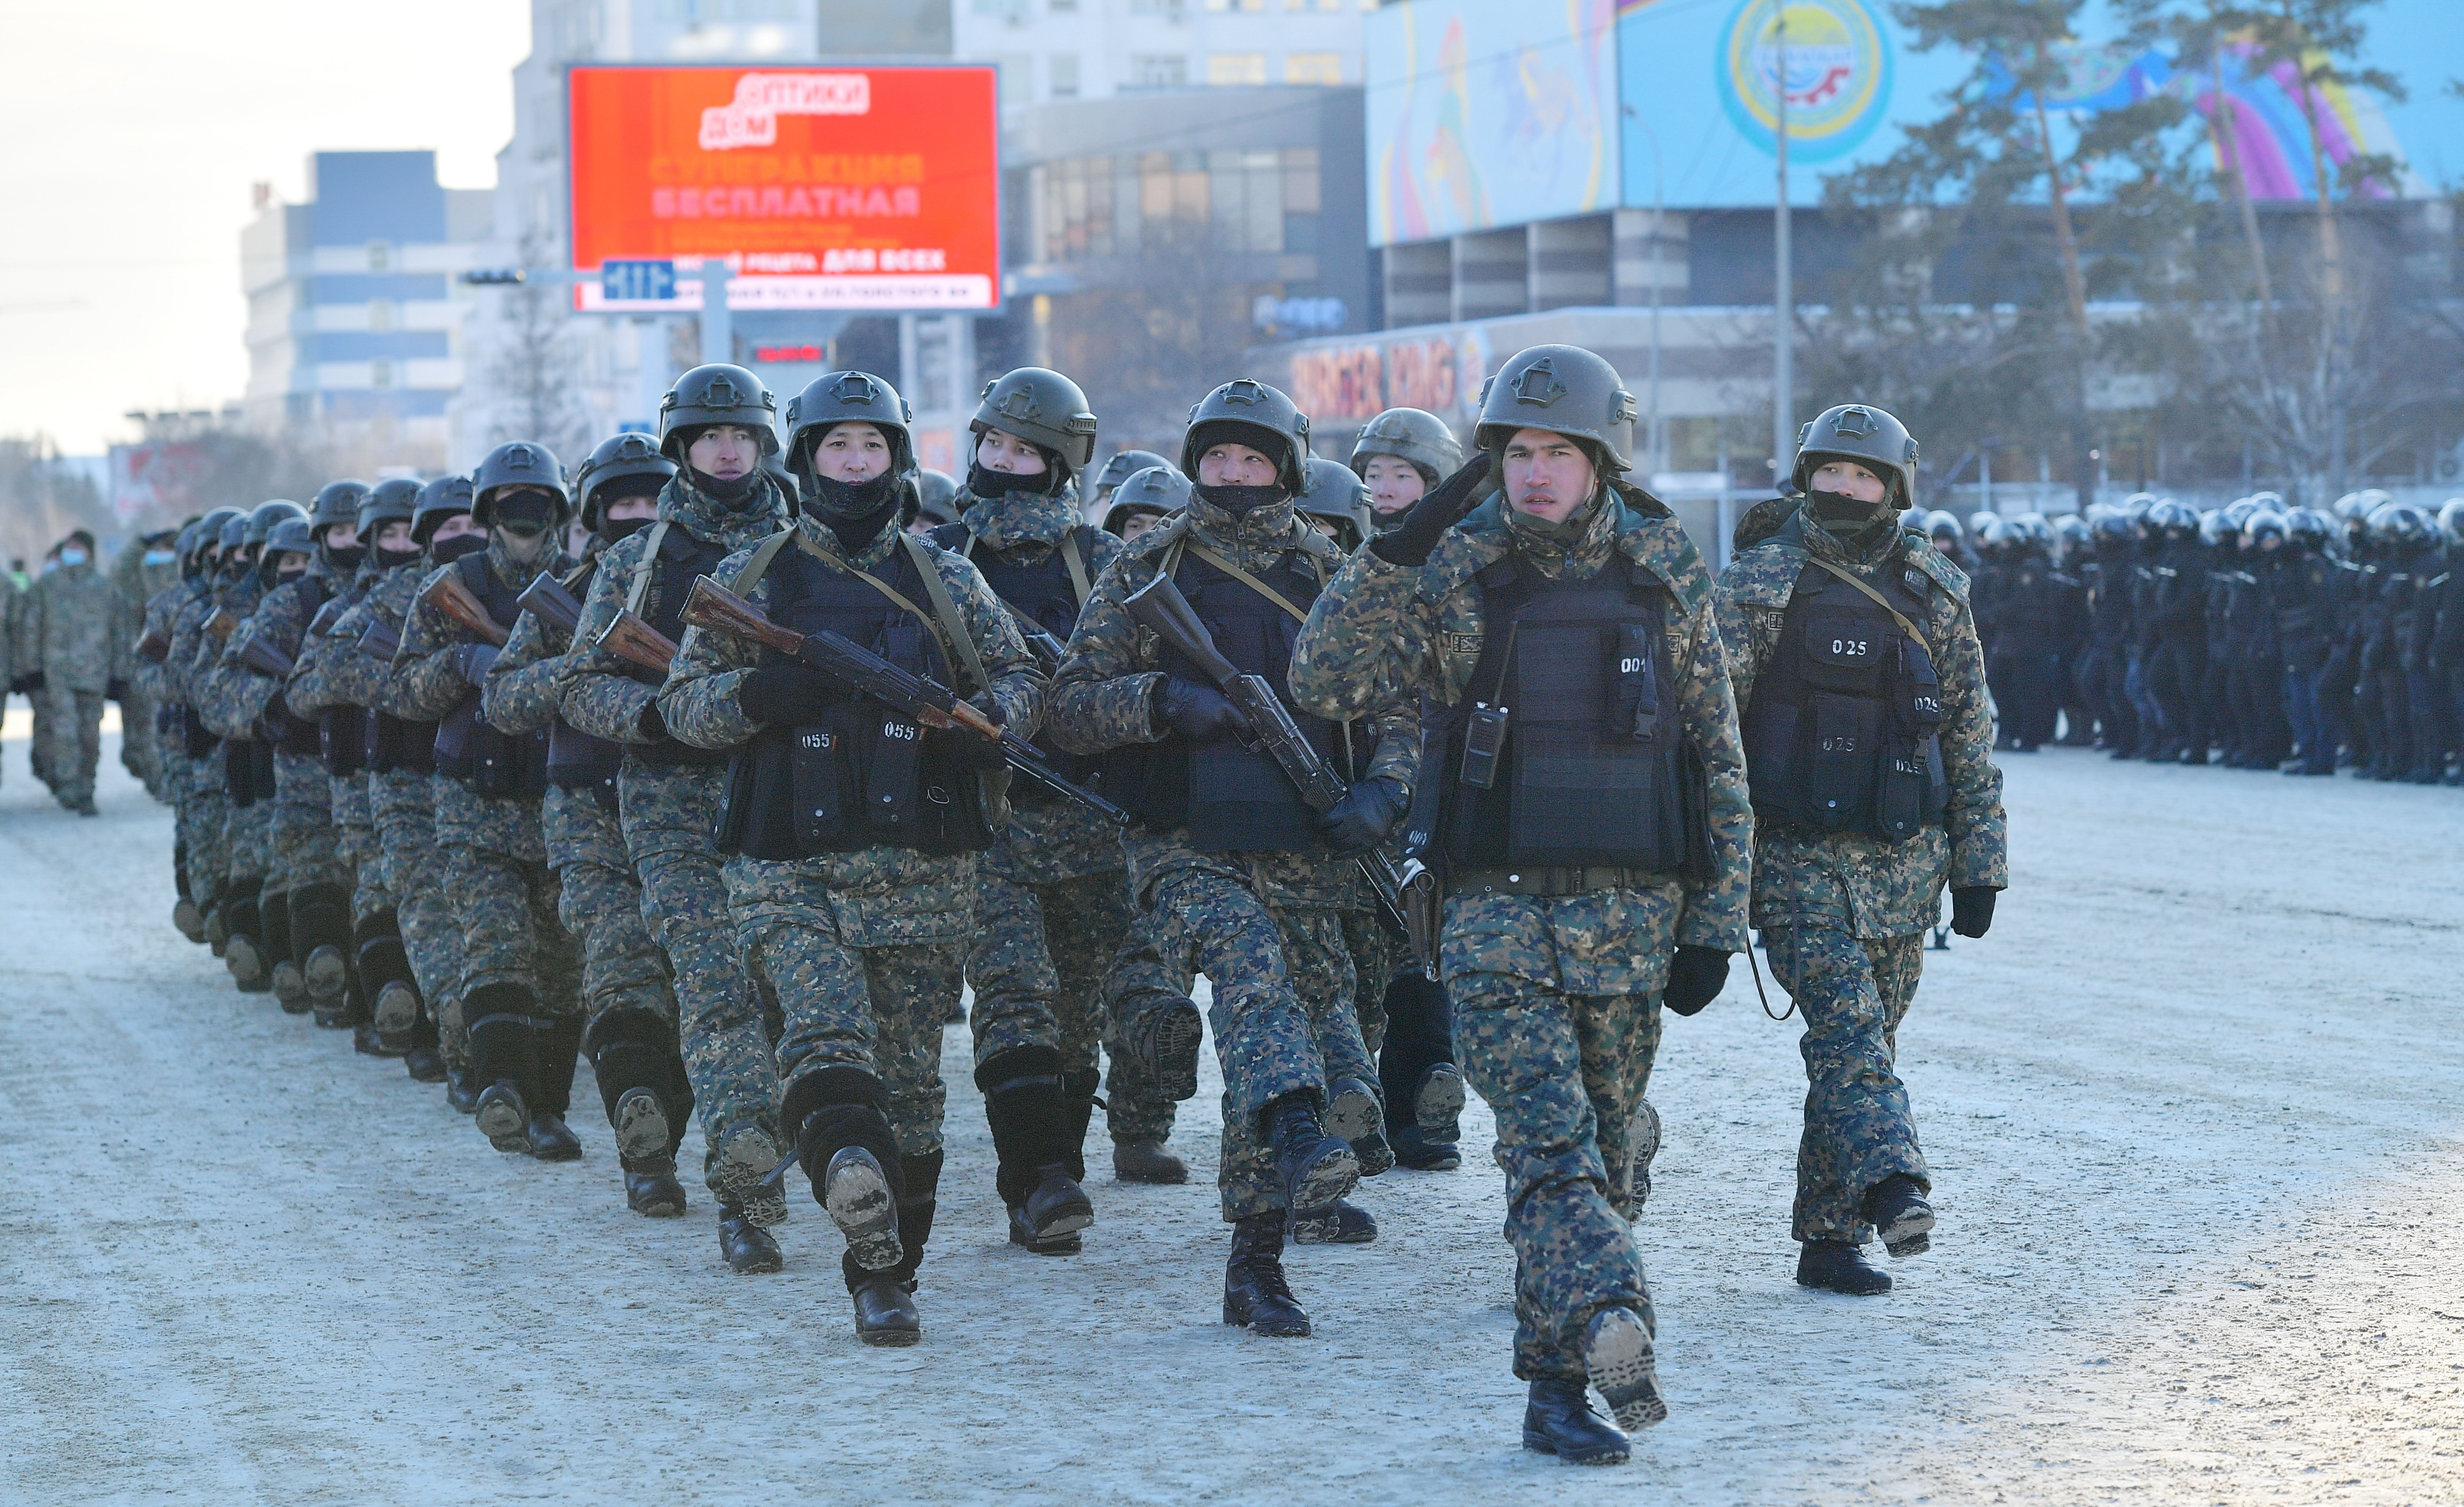 Павлодарских правоохранителей поблагодарили за службу в режиме ЧП